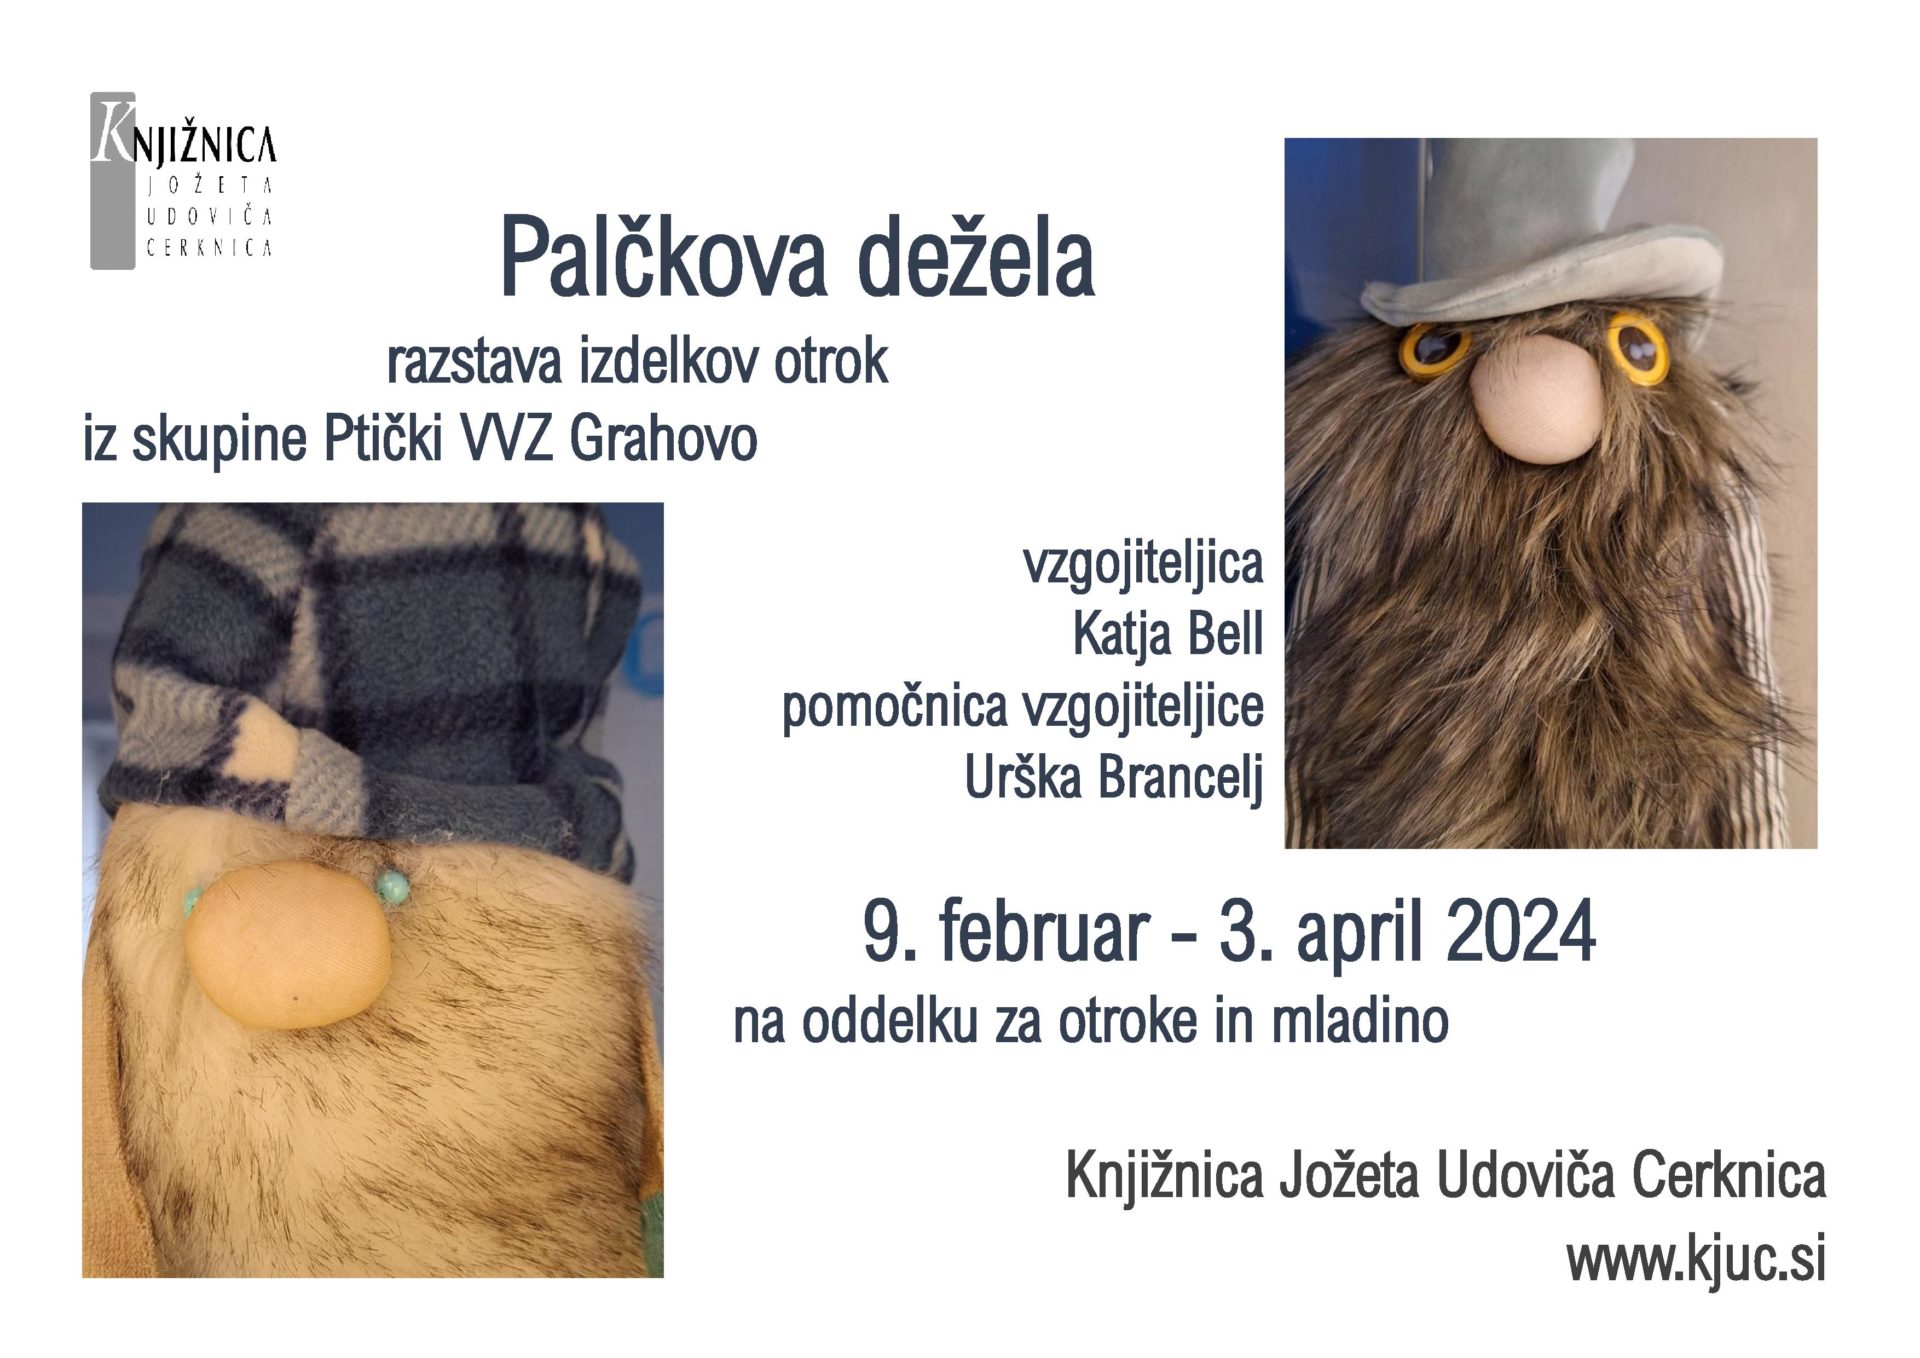 Palckova dezela page 001 - Palčkova dežela - razstava izdelkov otrok iz skupine Ptički VVZ Grahovo